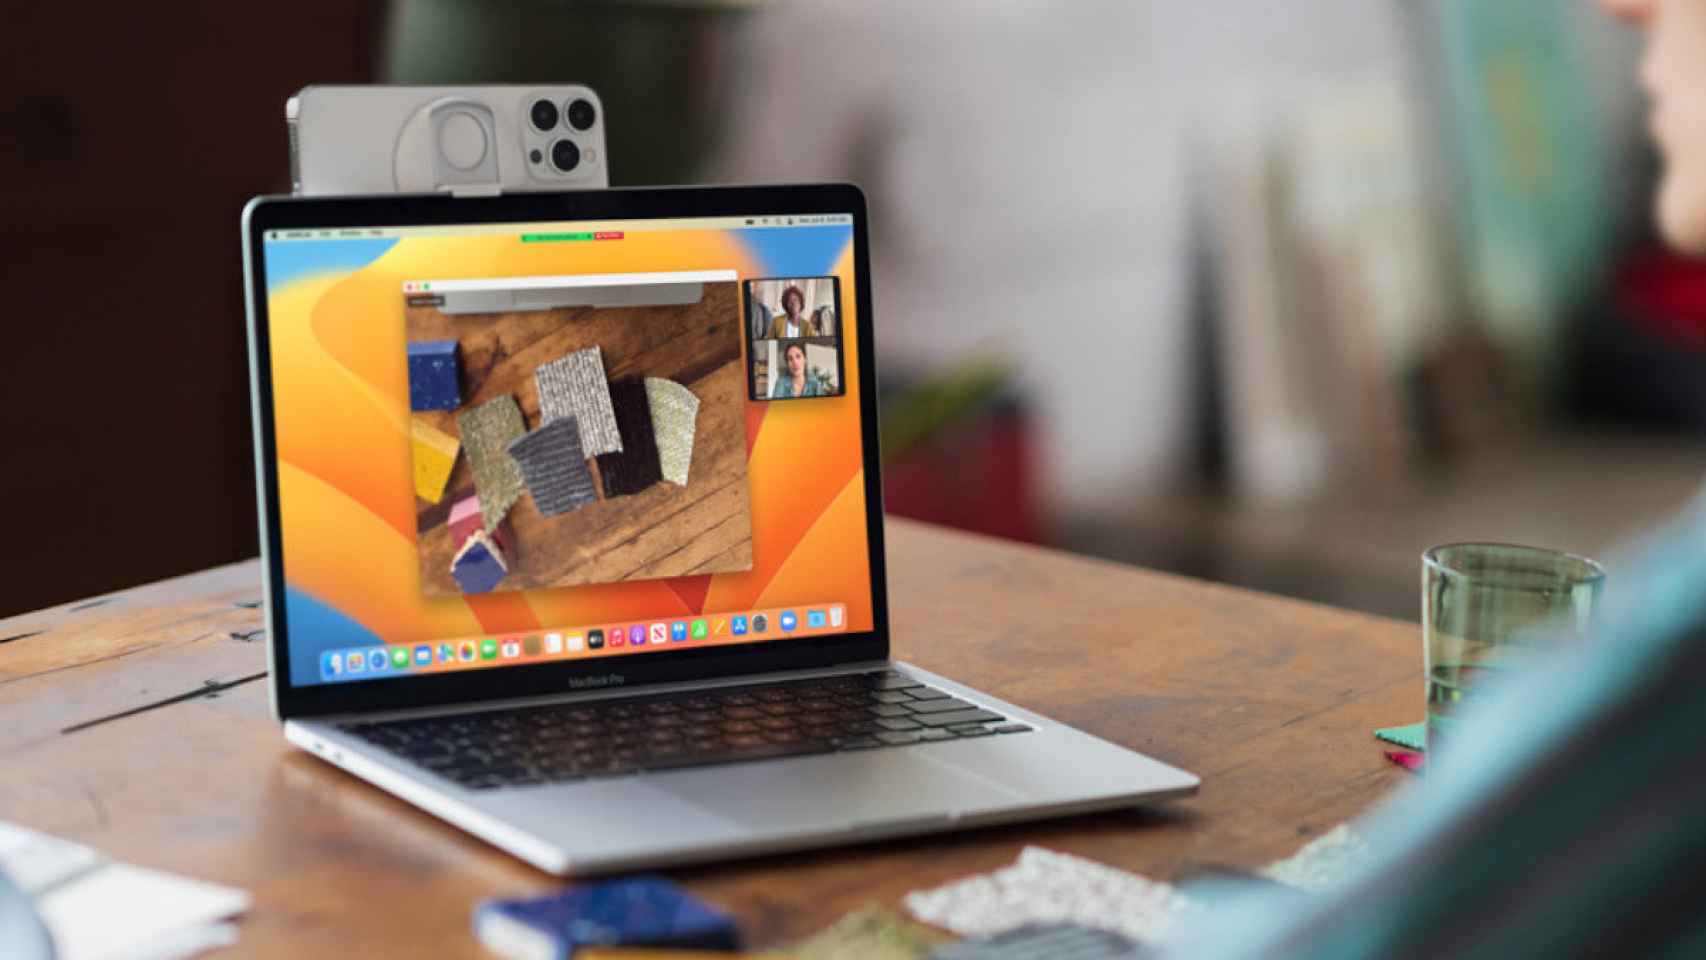 Amazon tira el precio de este portátil MacBook Pro: ¡ahora con 700 euros de descuento!